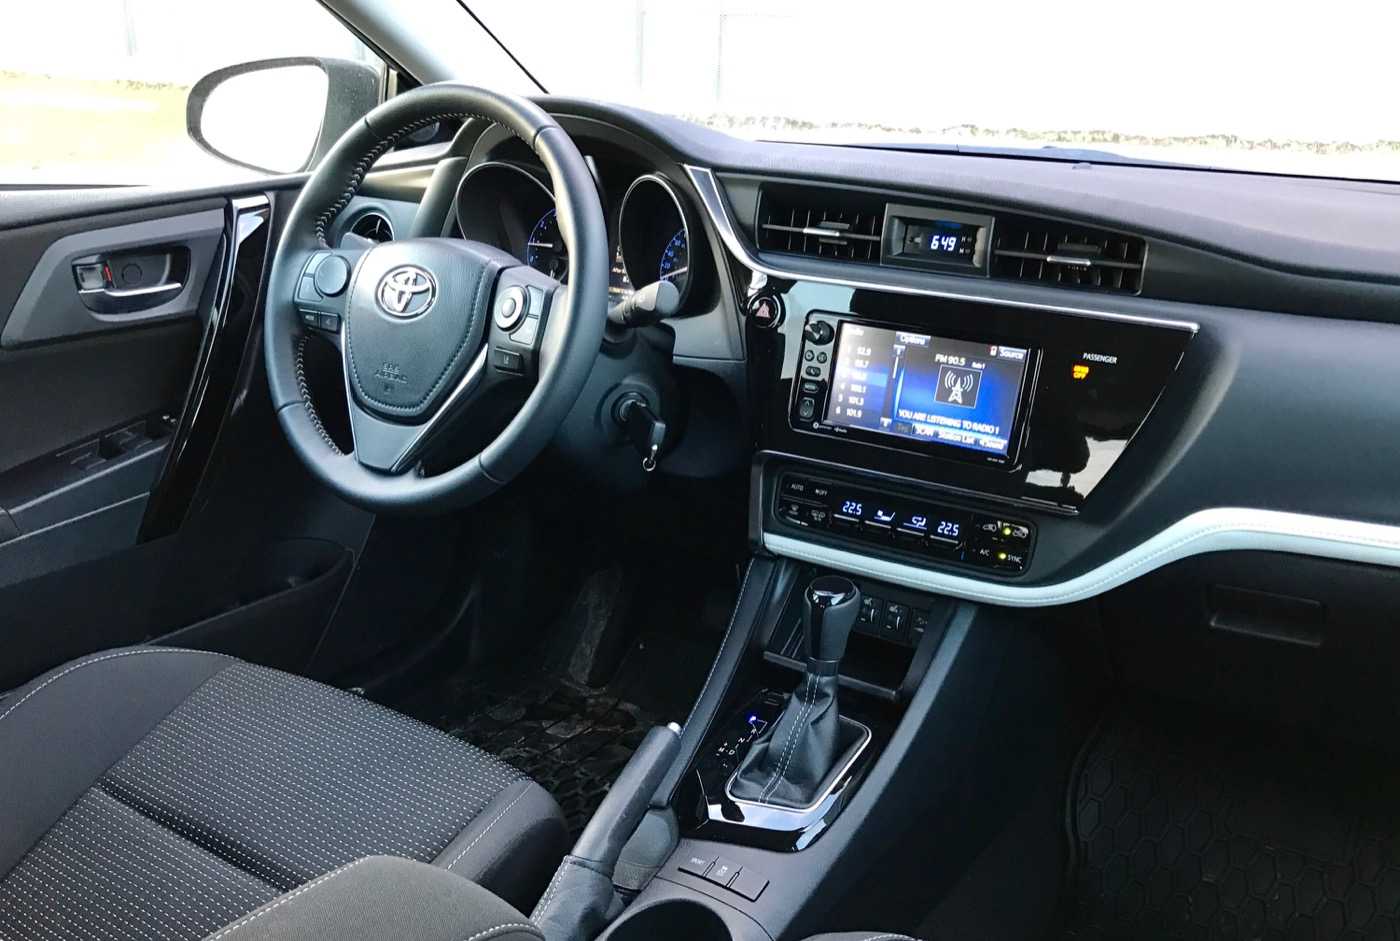 Toyota corolla 1.6 mt классик плюс (09.2013 - 05.2014) - технические характеристики